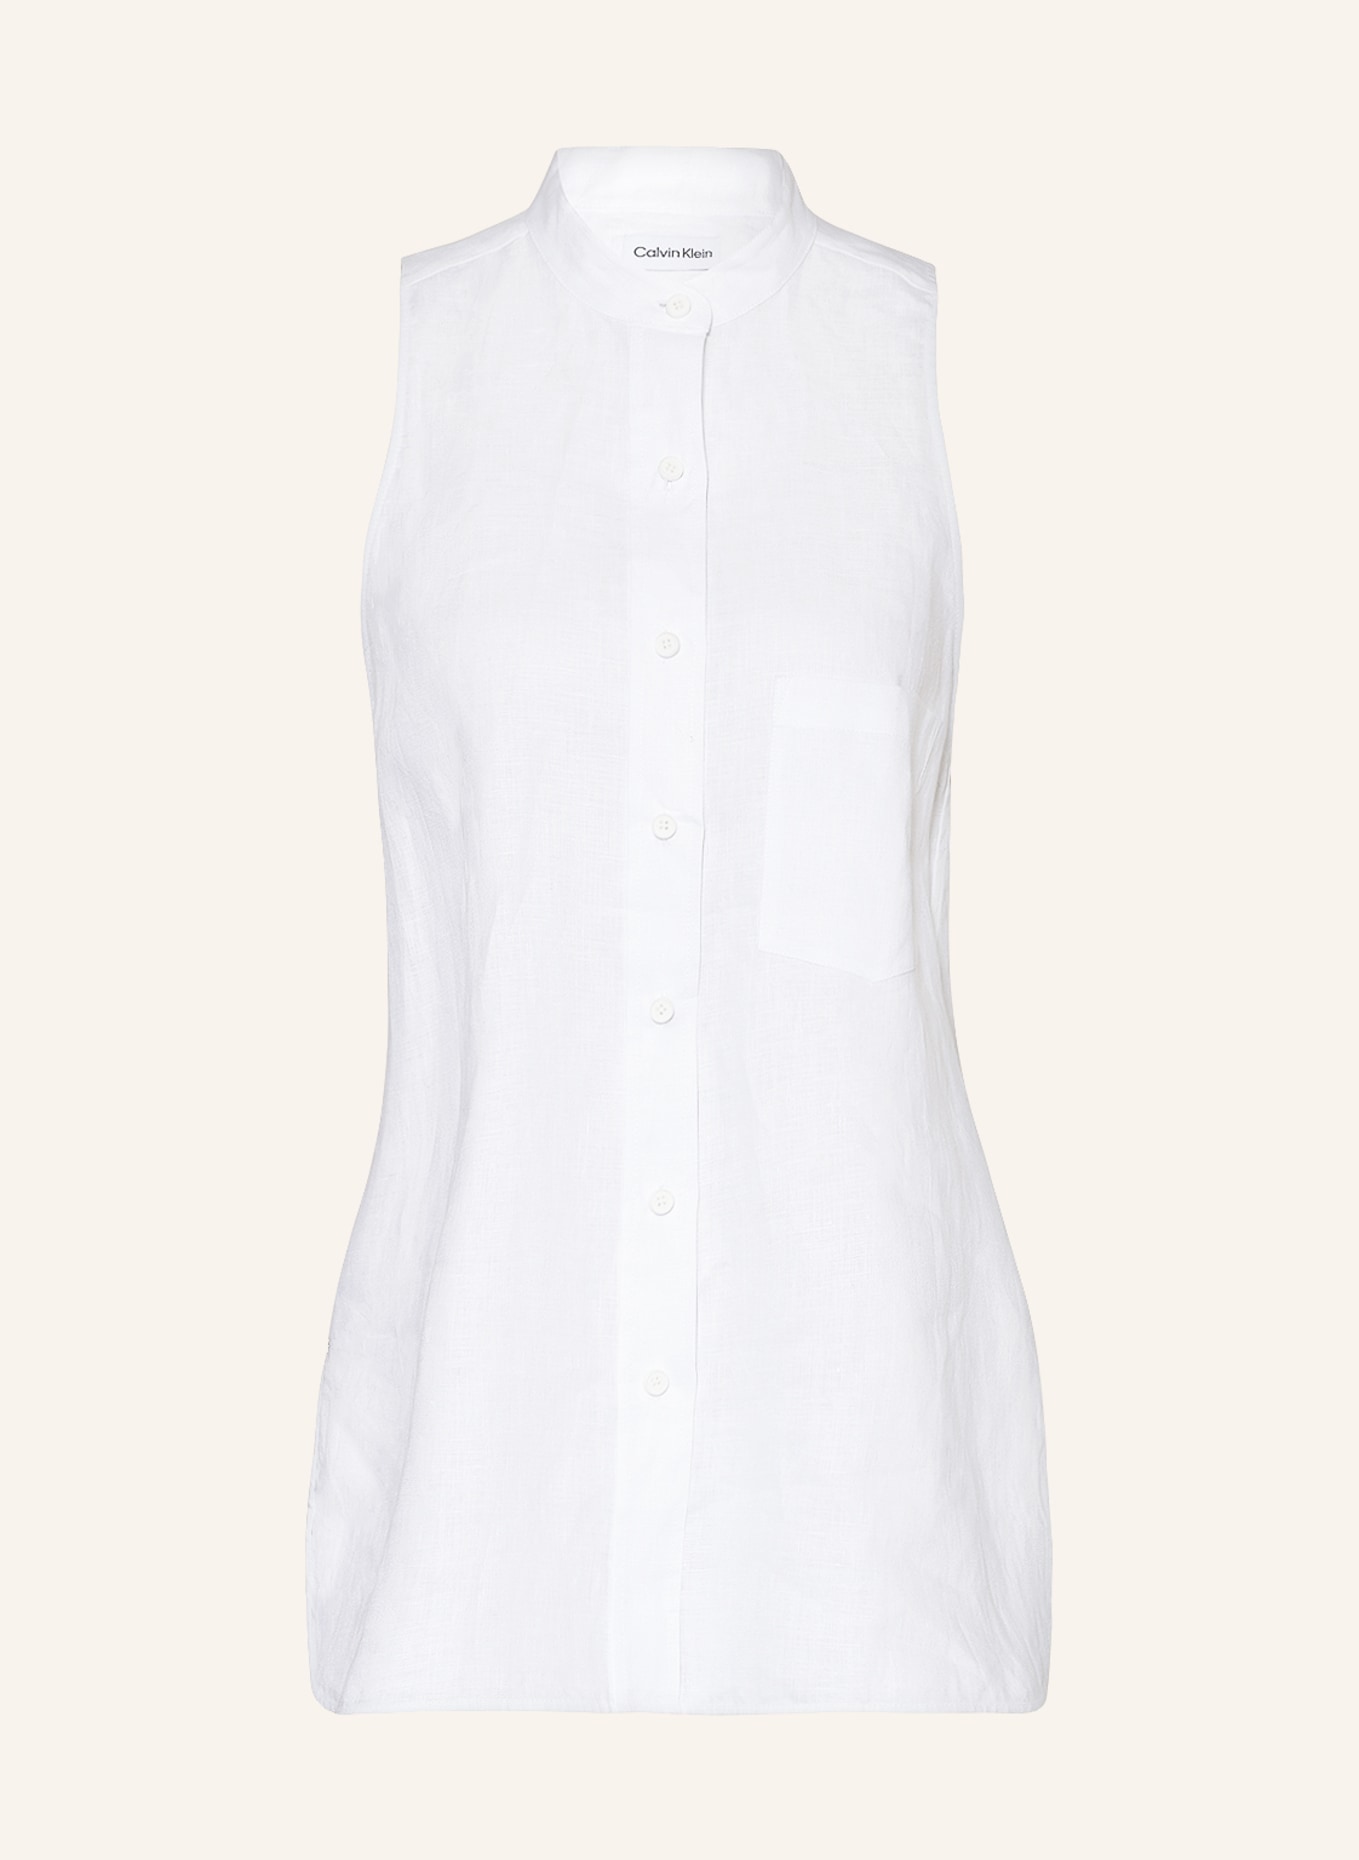 Calvin Klein Blouse top made of linen, Color: WHITE (Image 1)